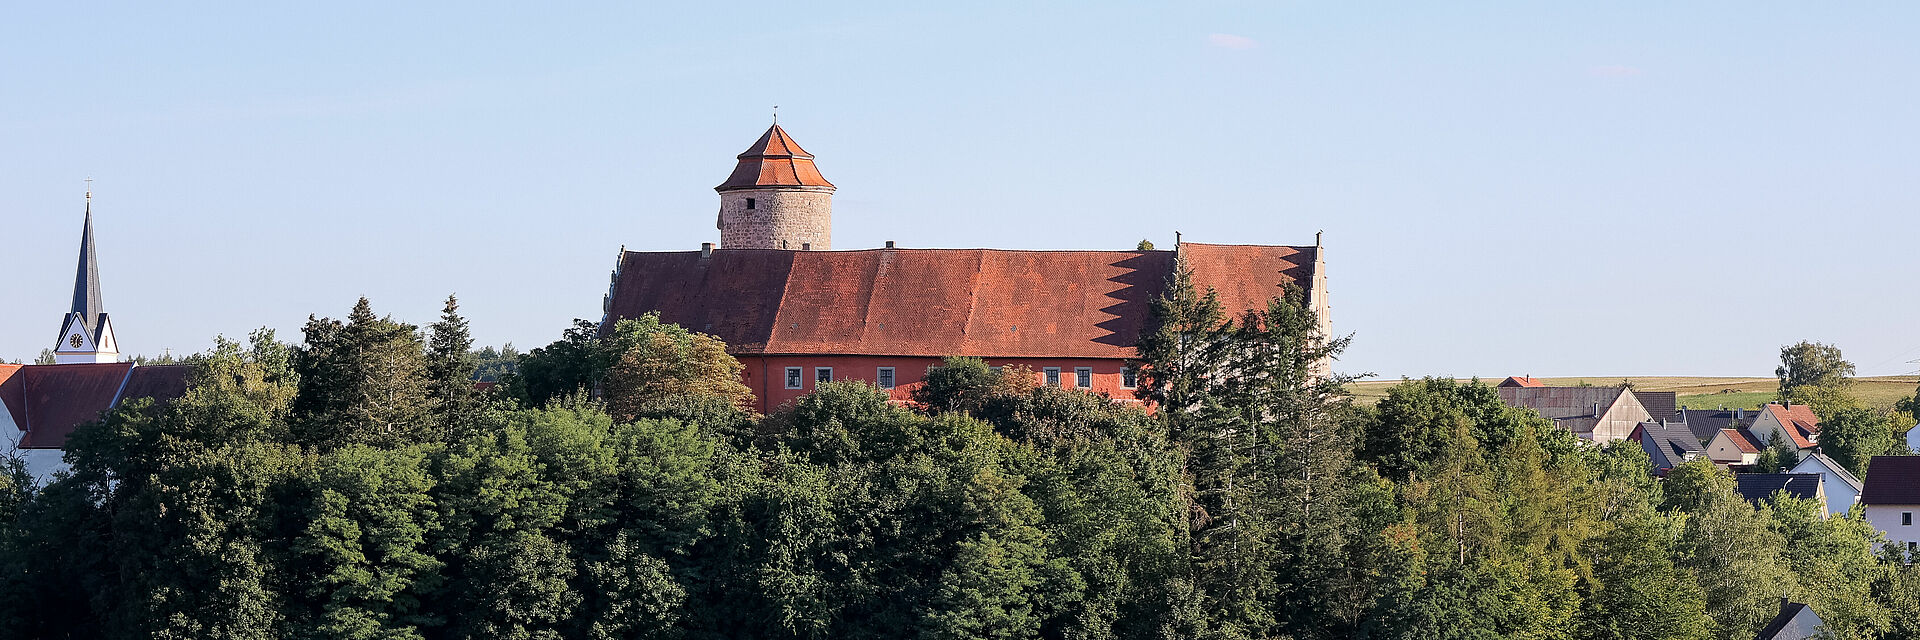 Ortsansicht Lisberg mit Burg